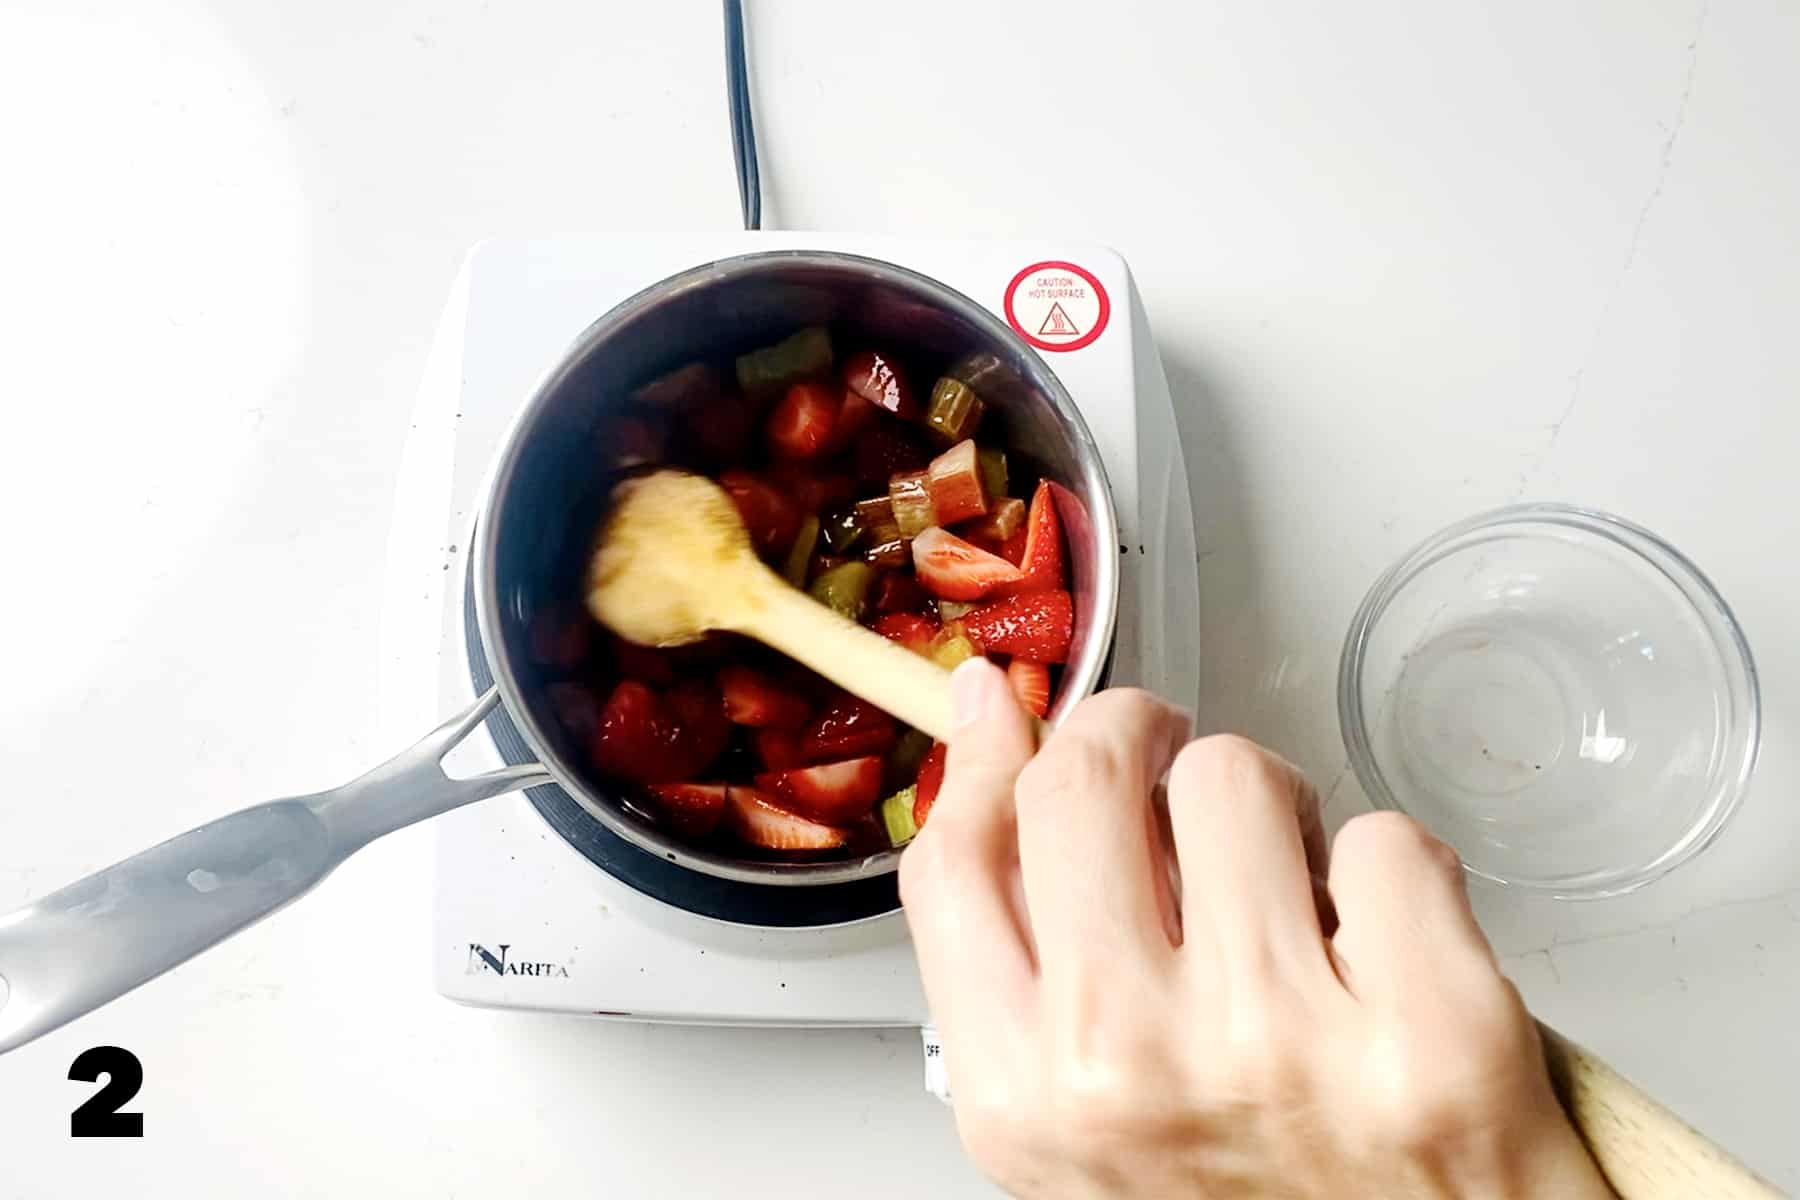 stirring strawberries and rhubarb in saucepan on cooktop